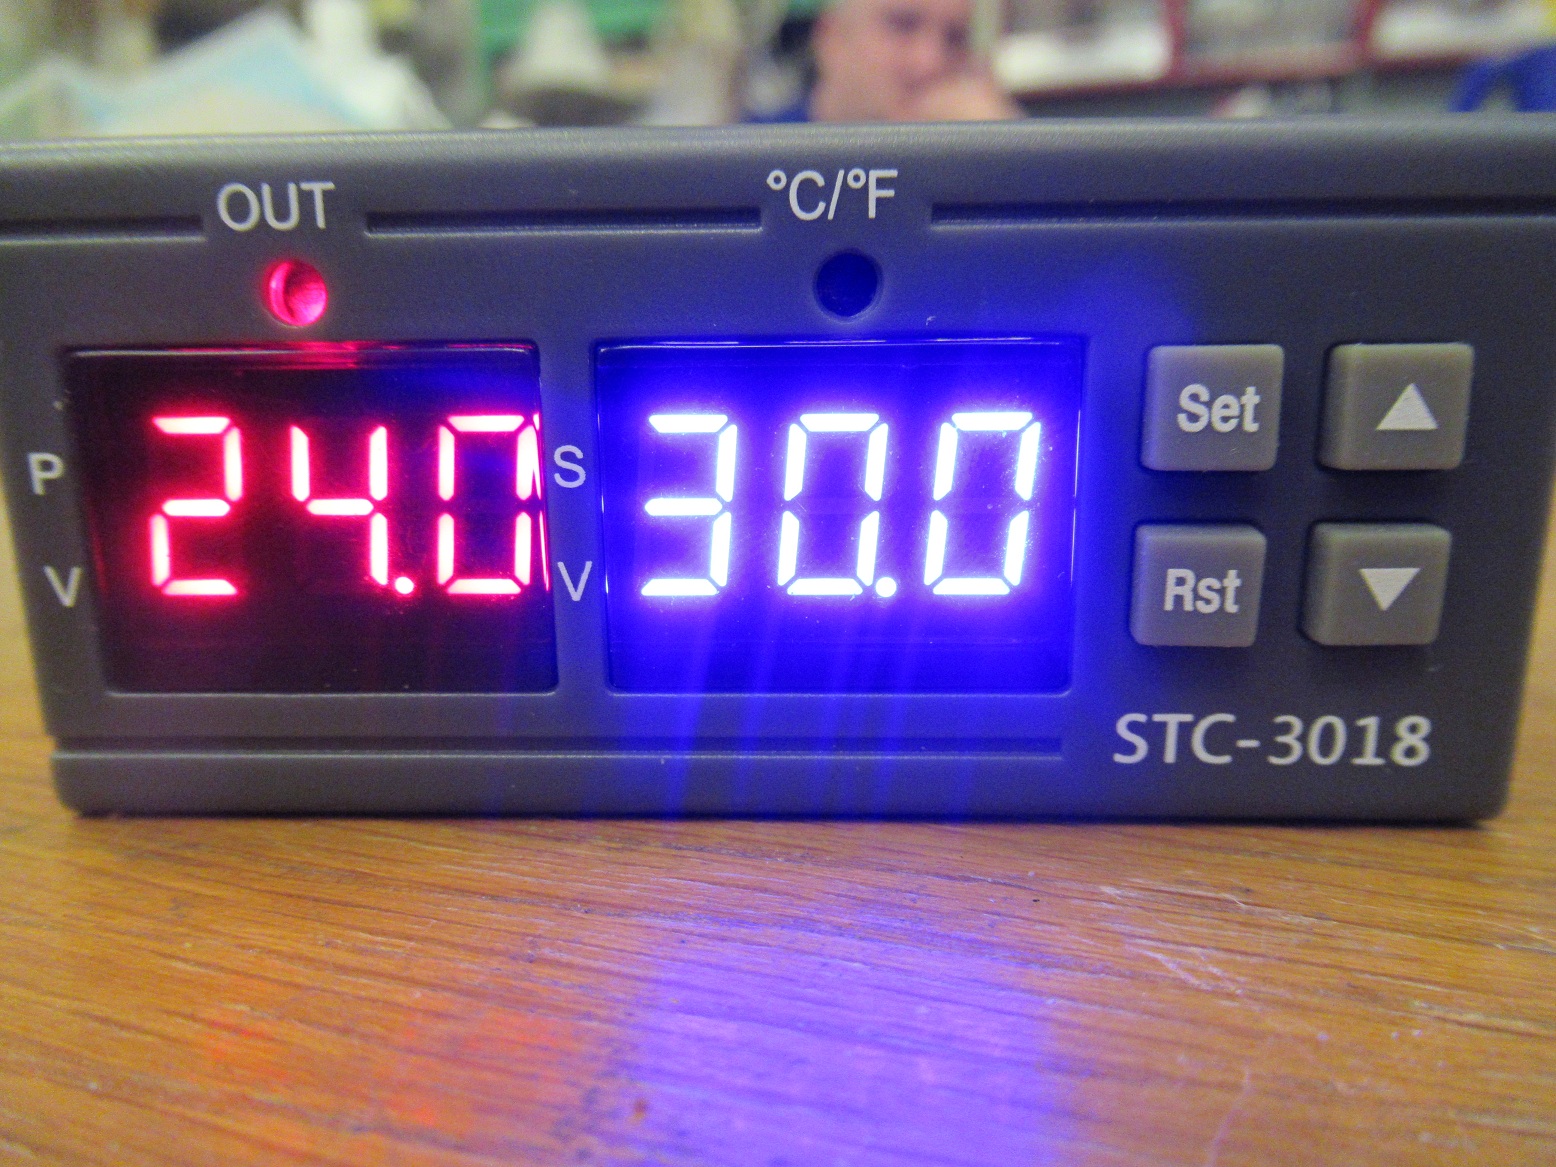 STC-3018 temperature controller